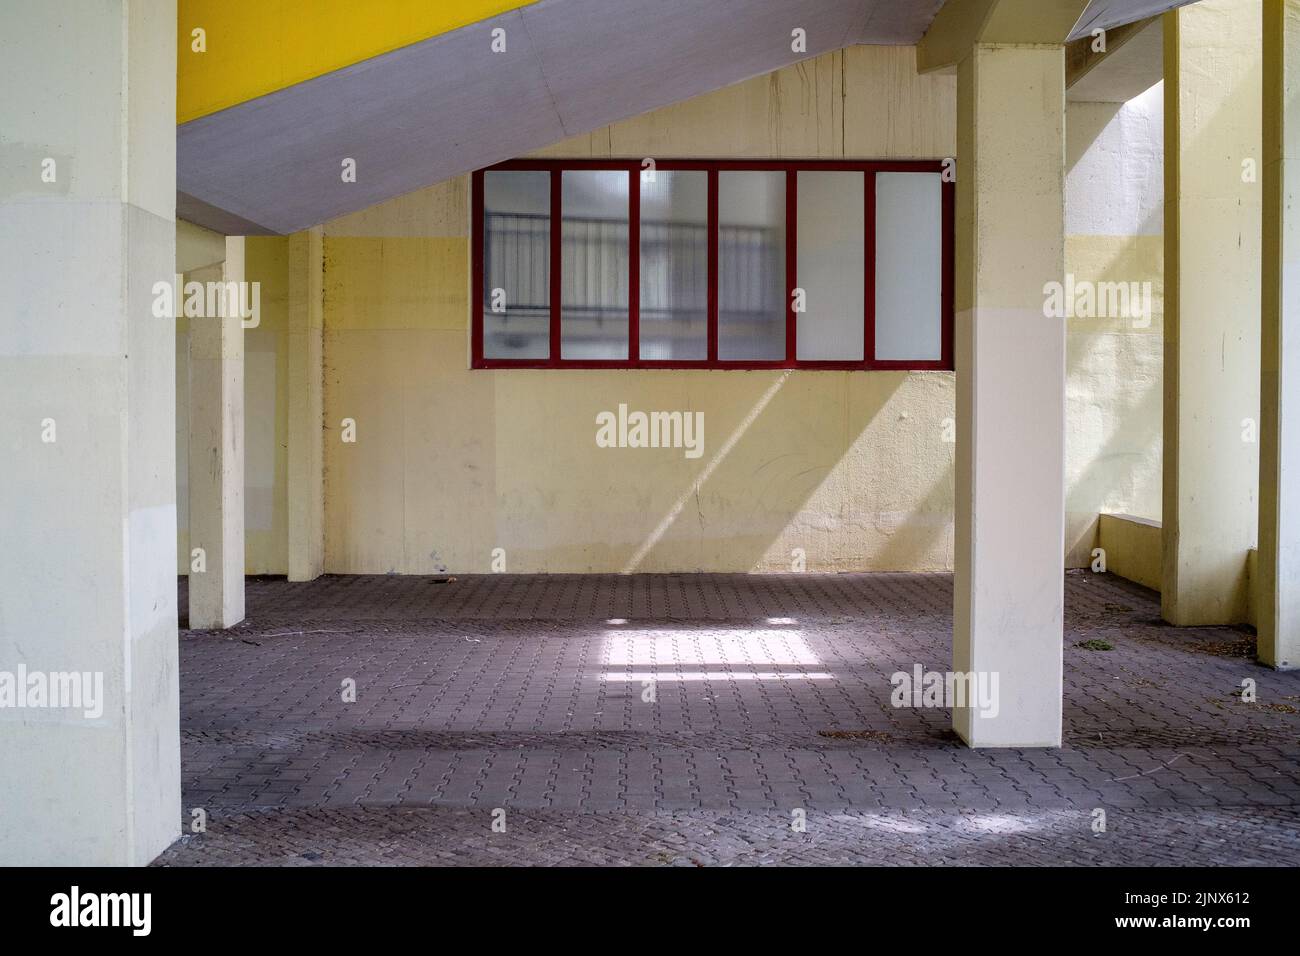 Details der gelb lackierten Betonarchitektur in einer Wohnanlage in Berlin, Deutschland. Stockfoto